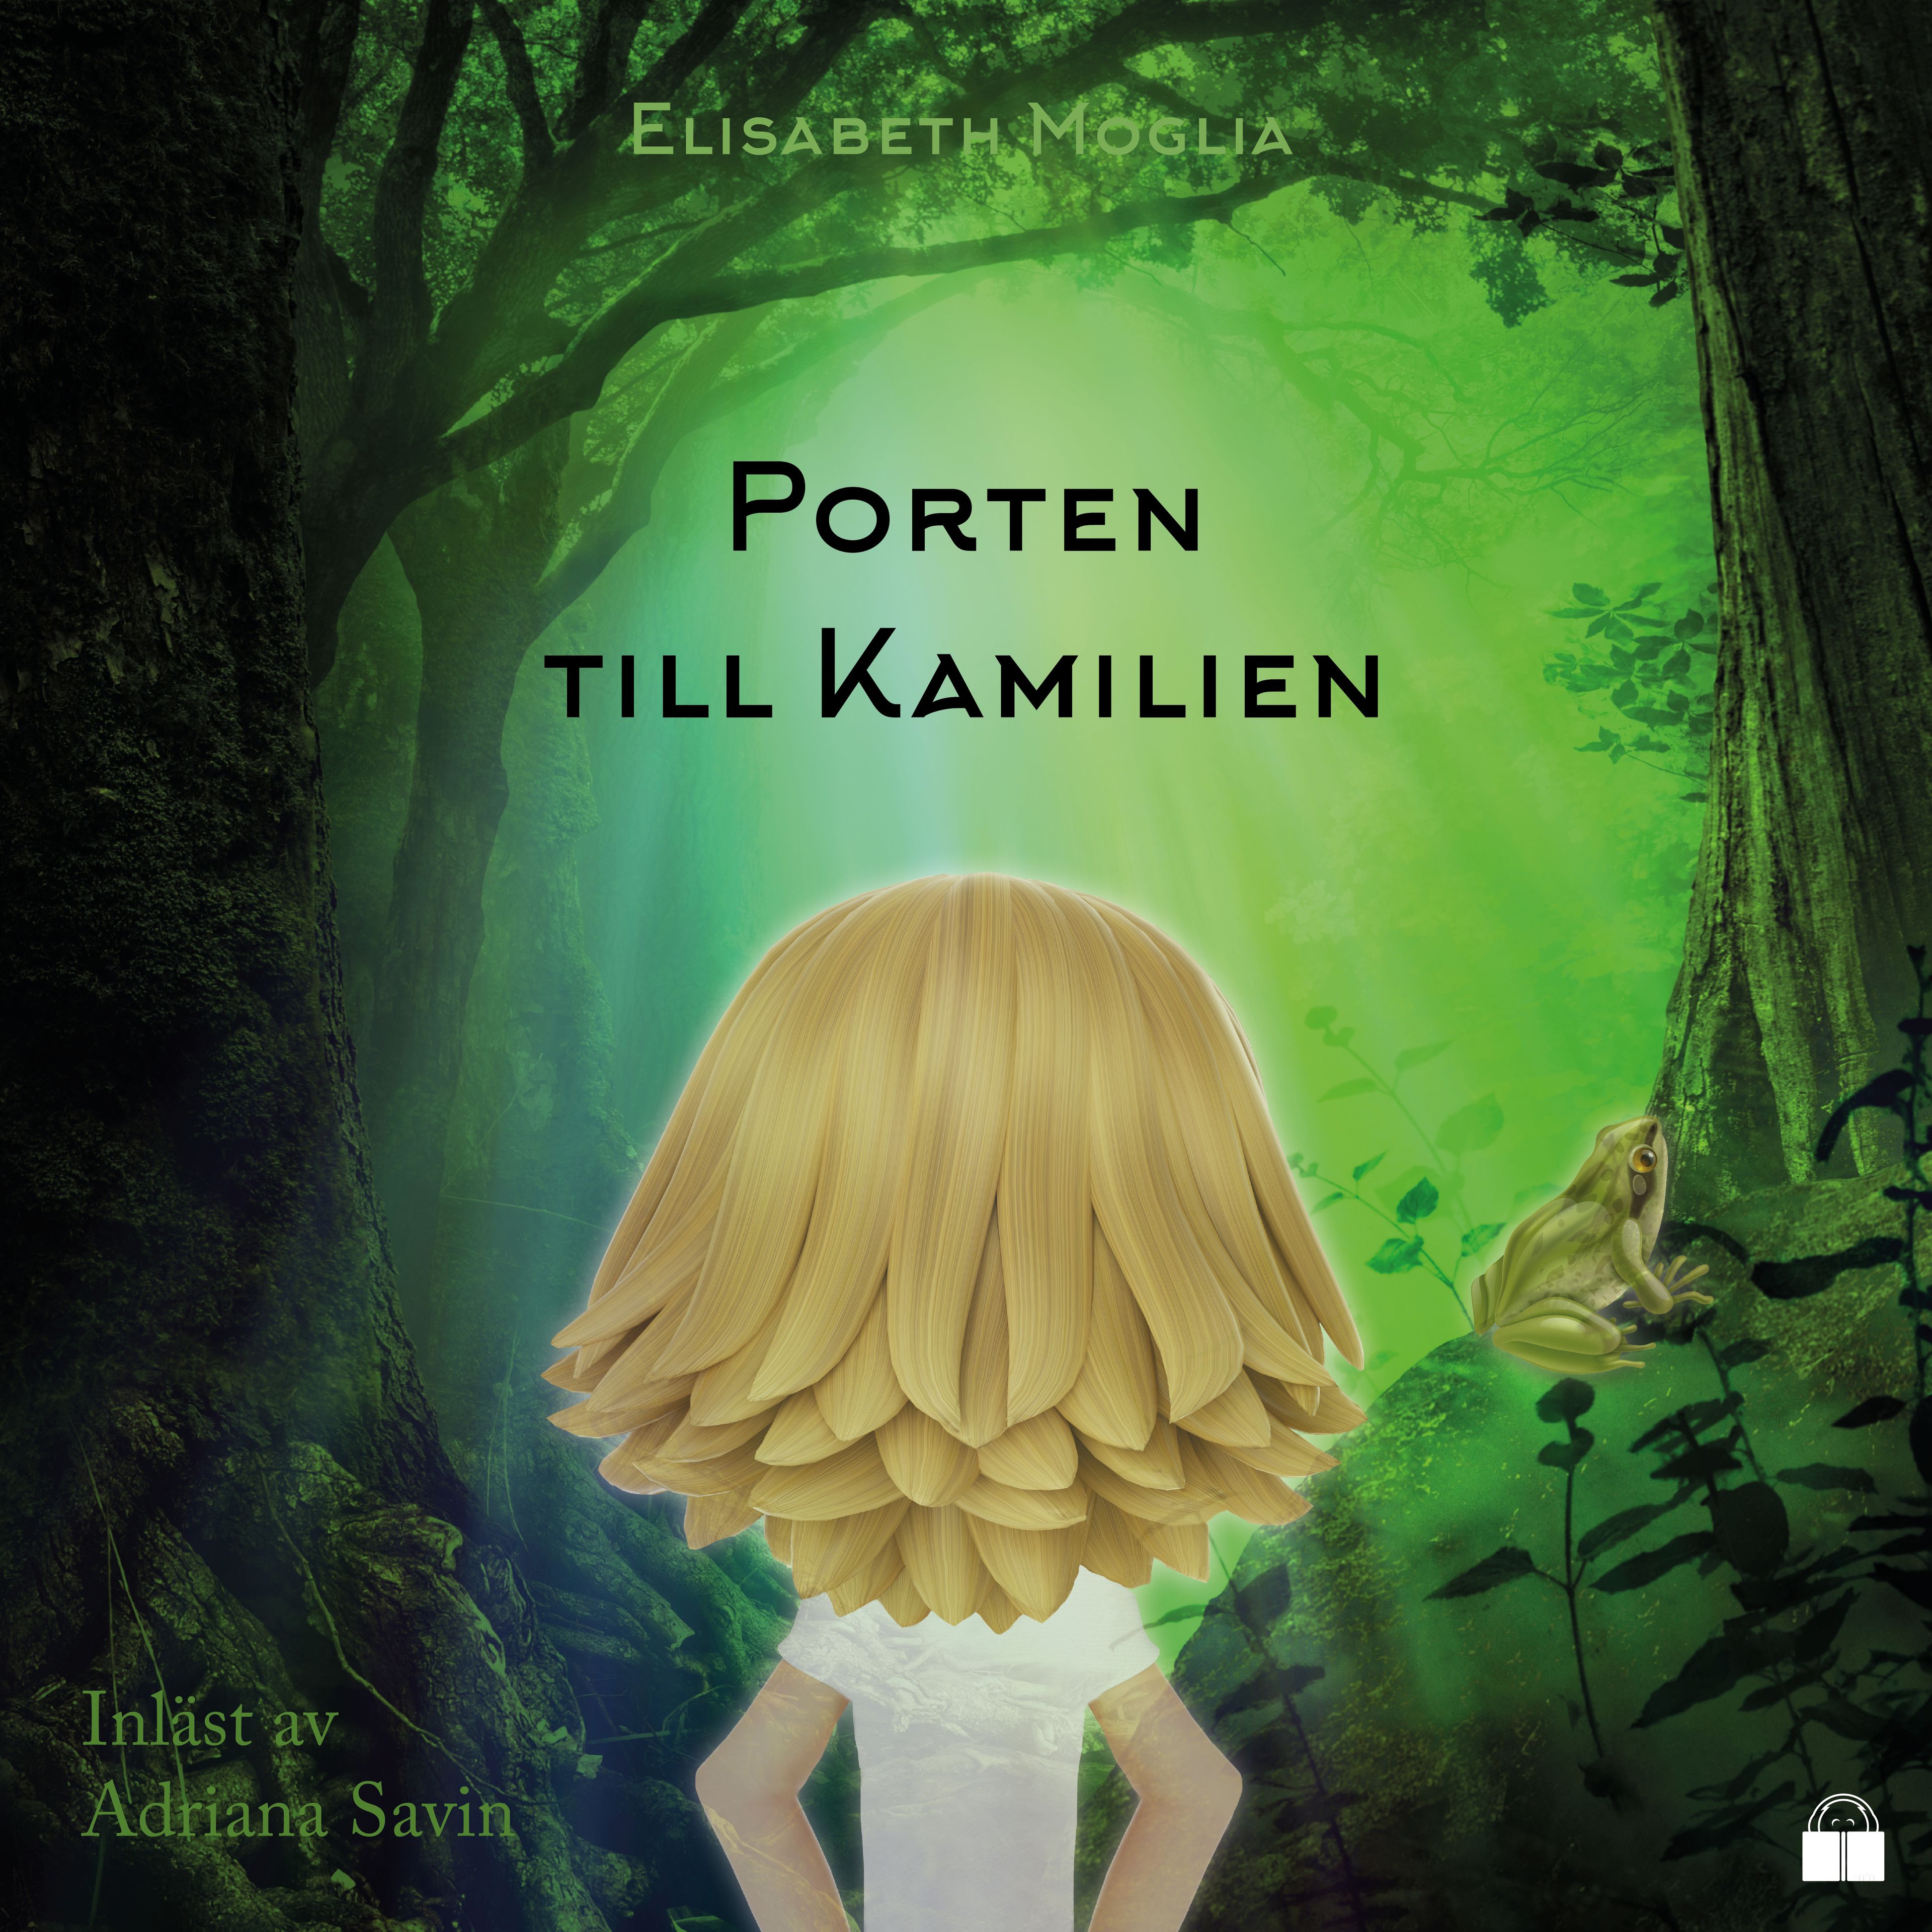 Porten till Kamilien, ljudbok av Elisabeth Moglia